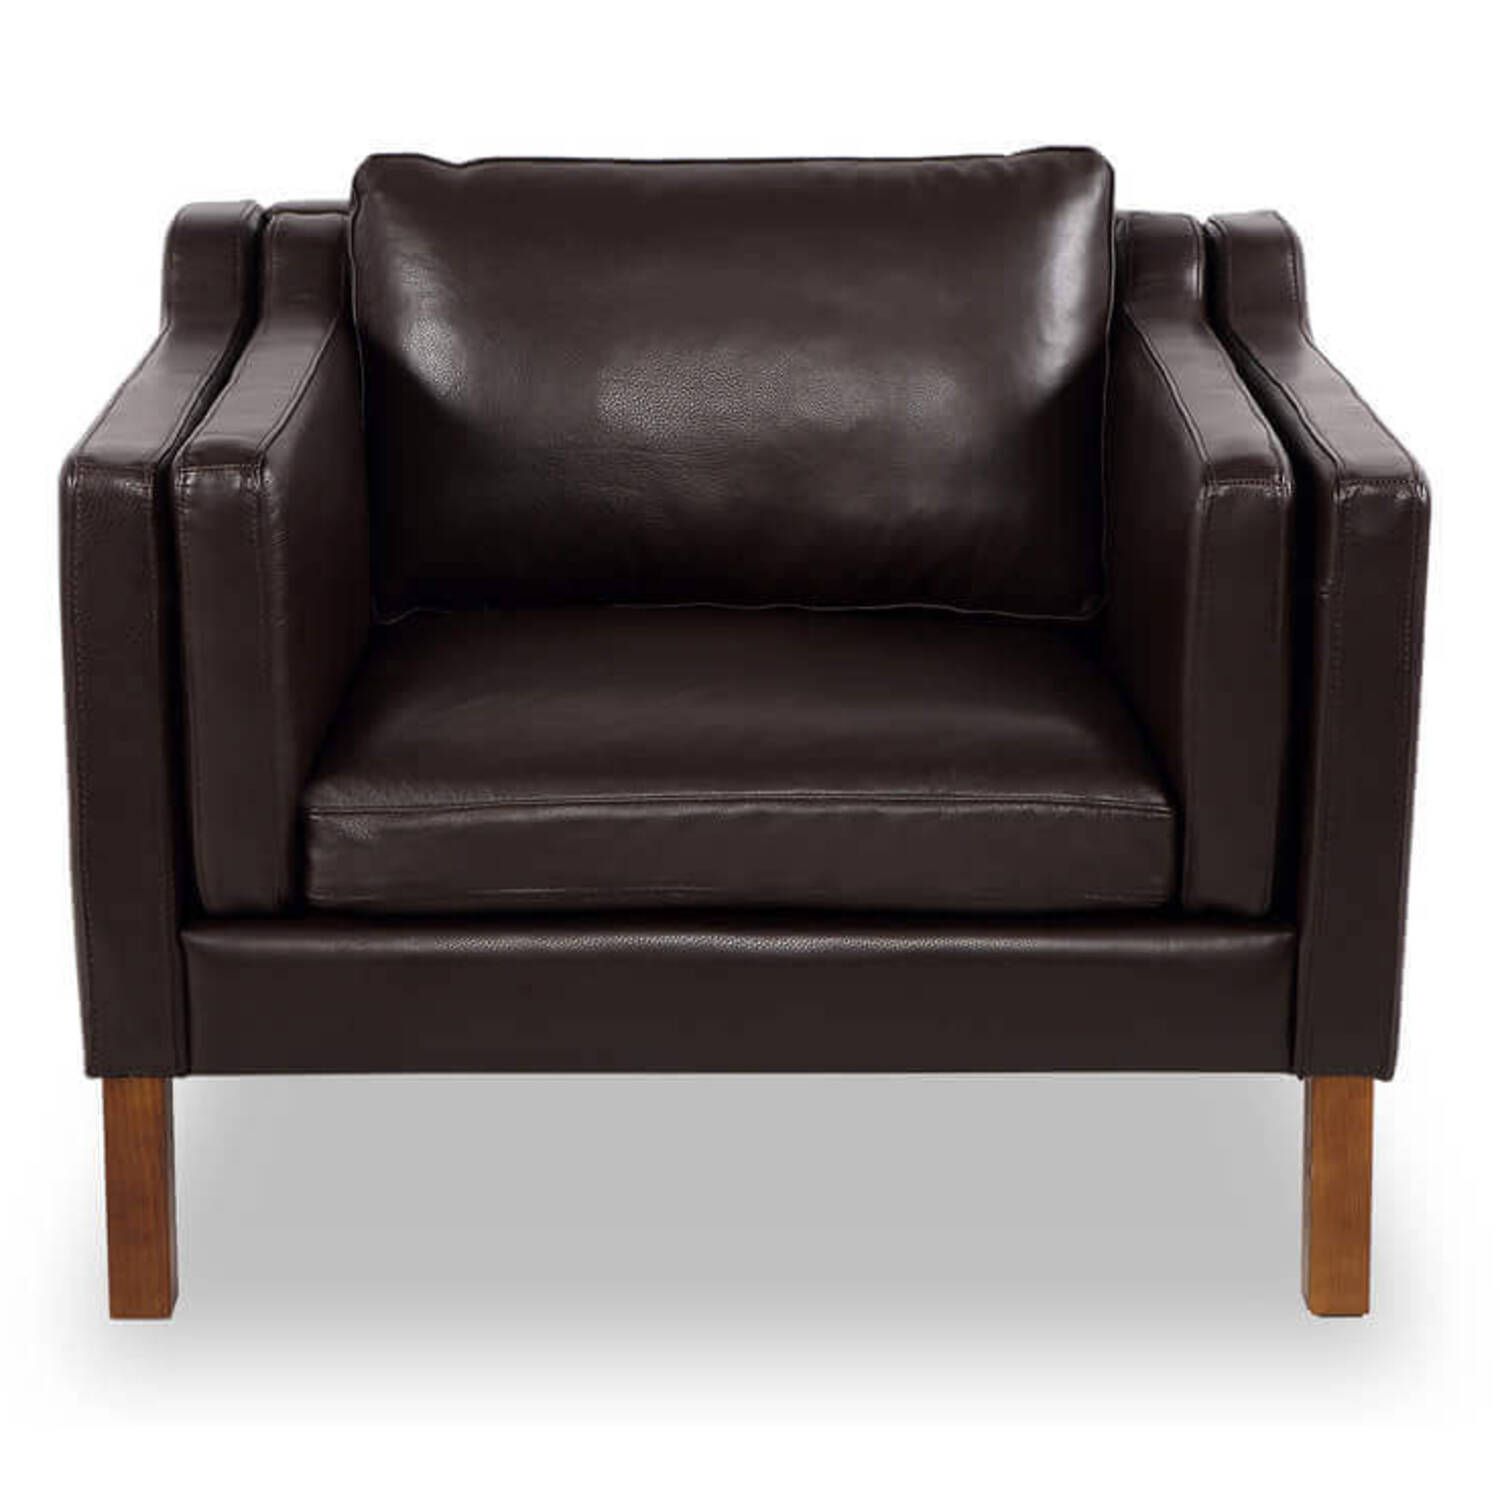 Кресло Monroe, коричневое кожаное